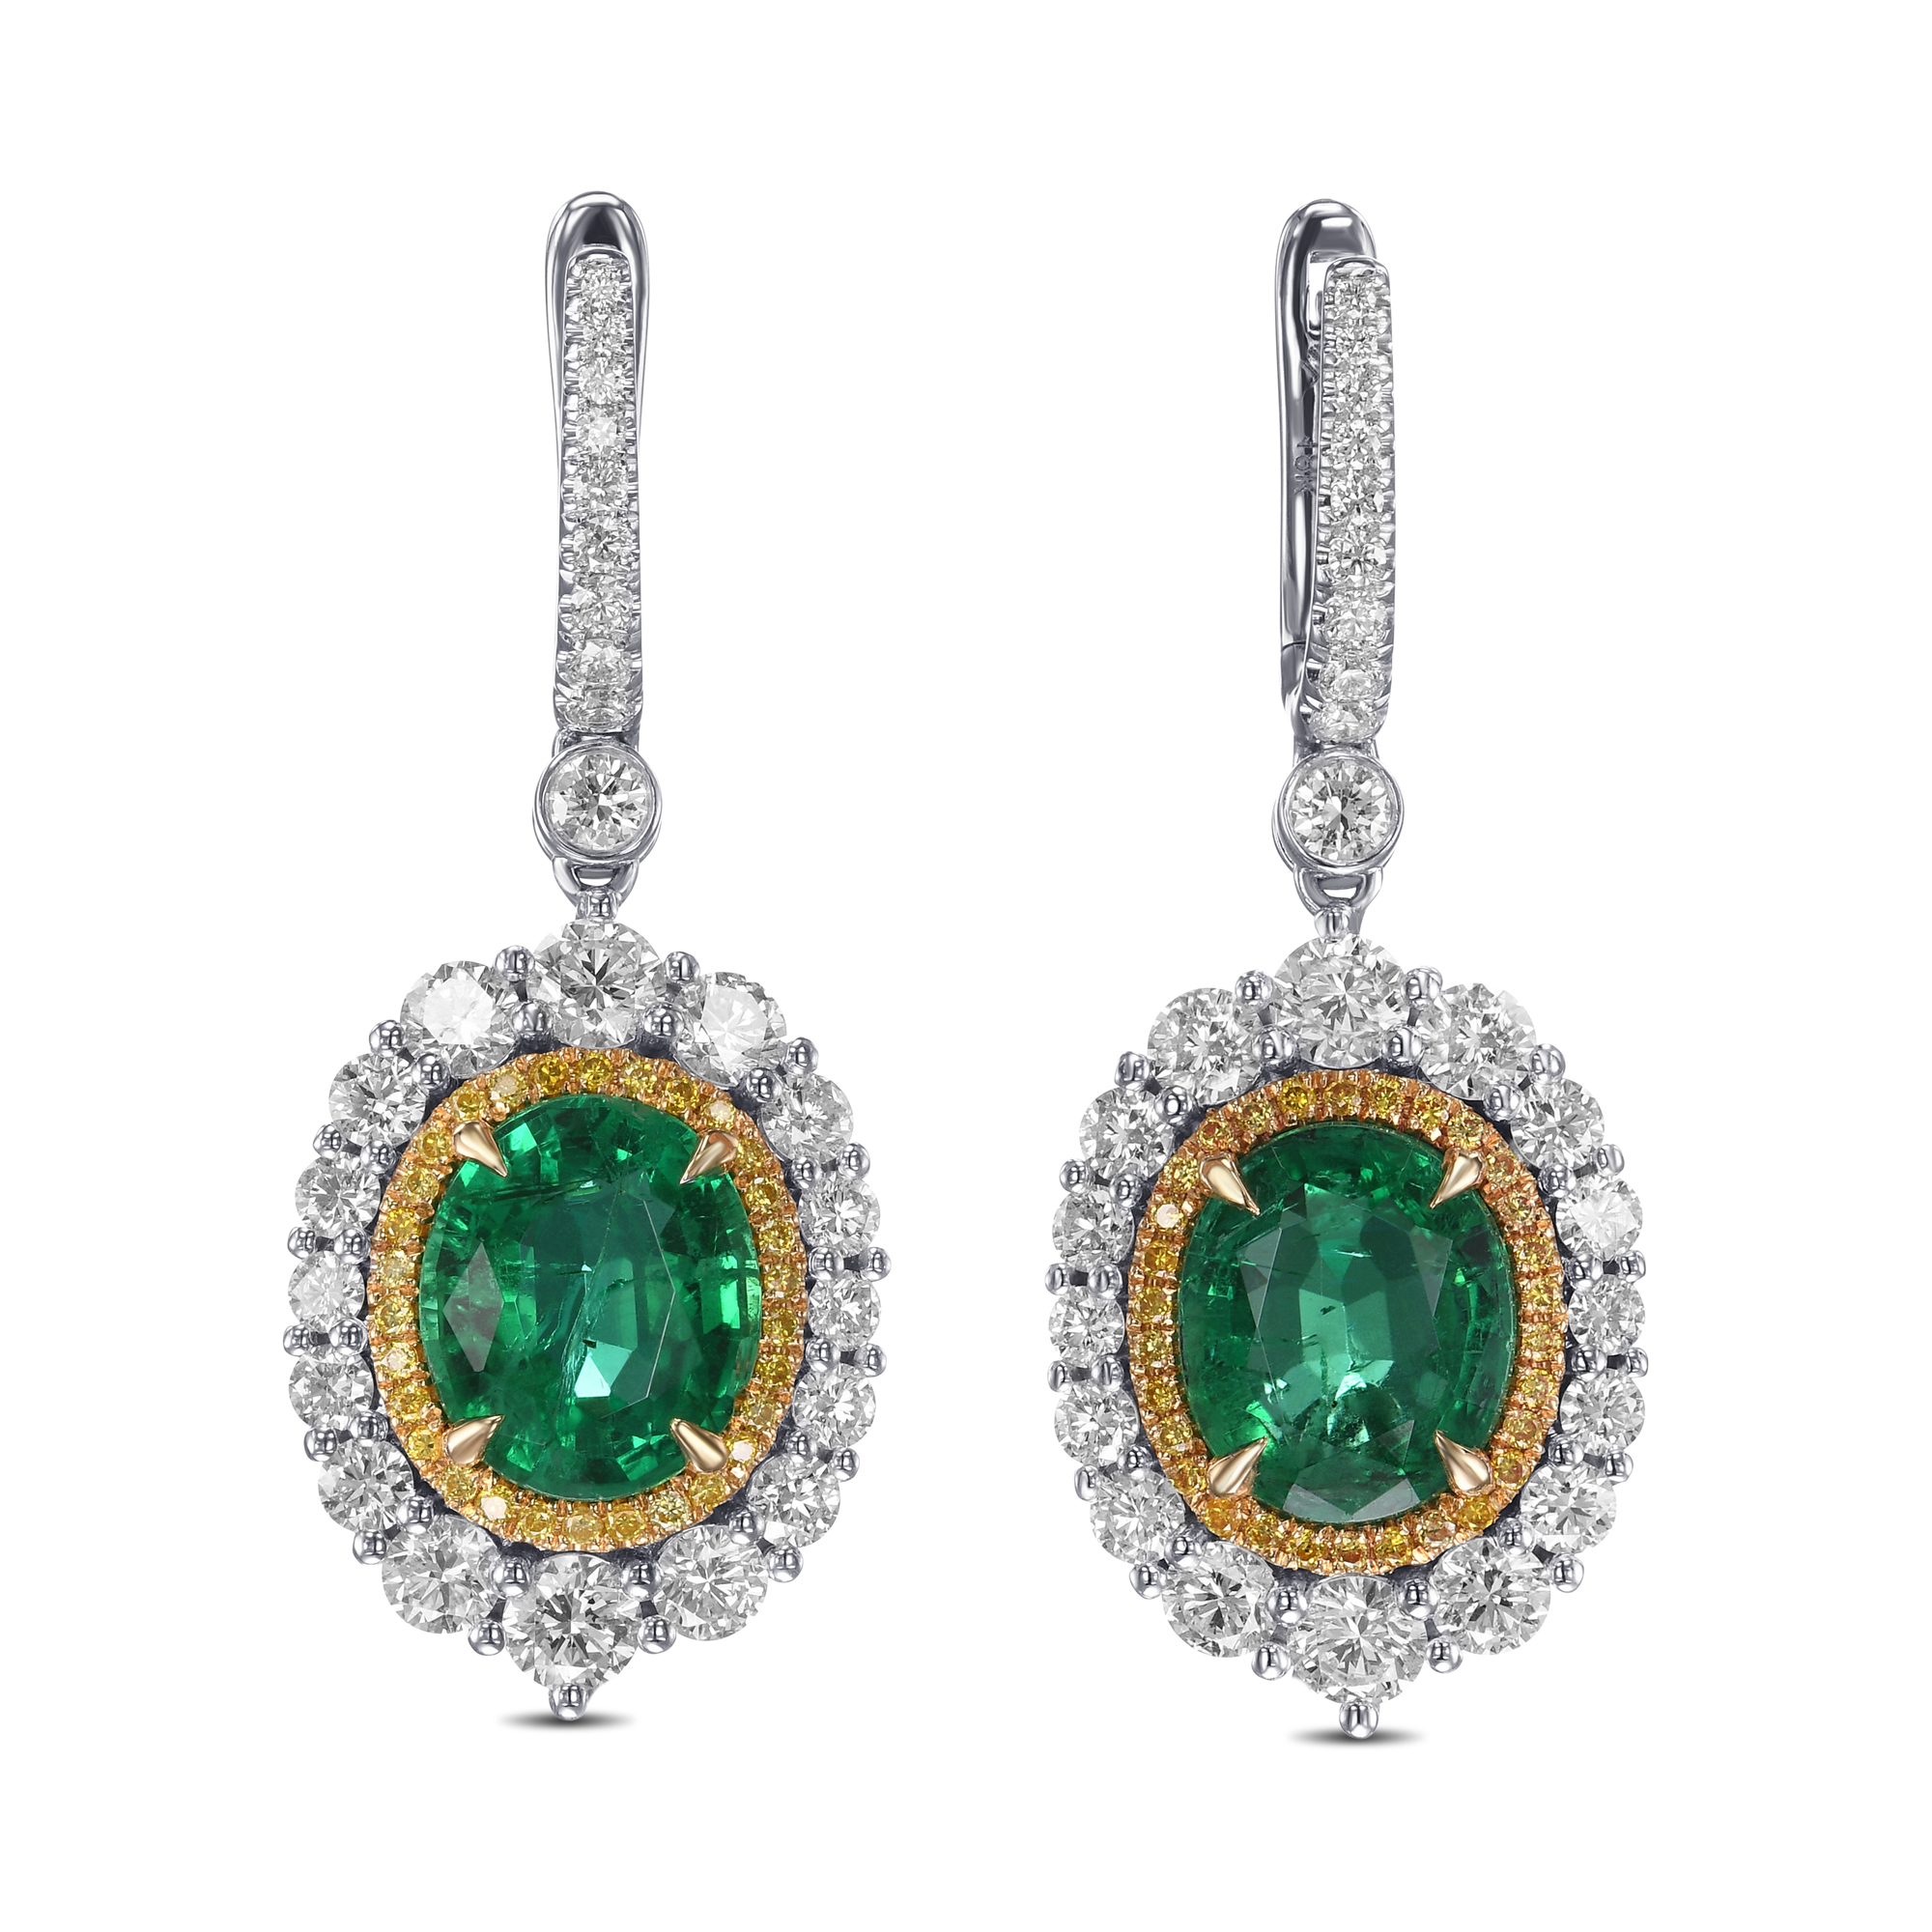 Oval Emerald and Diamond Double Halo Earrings, SKU 582054 (8.05Ct TW)